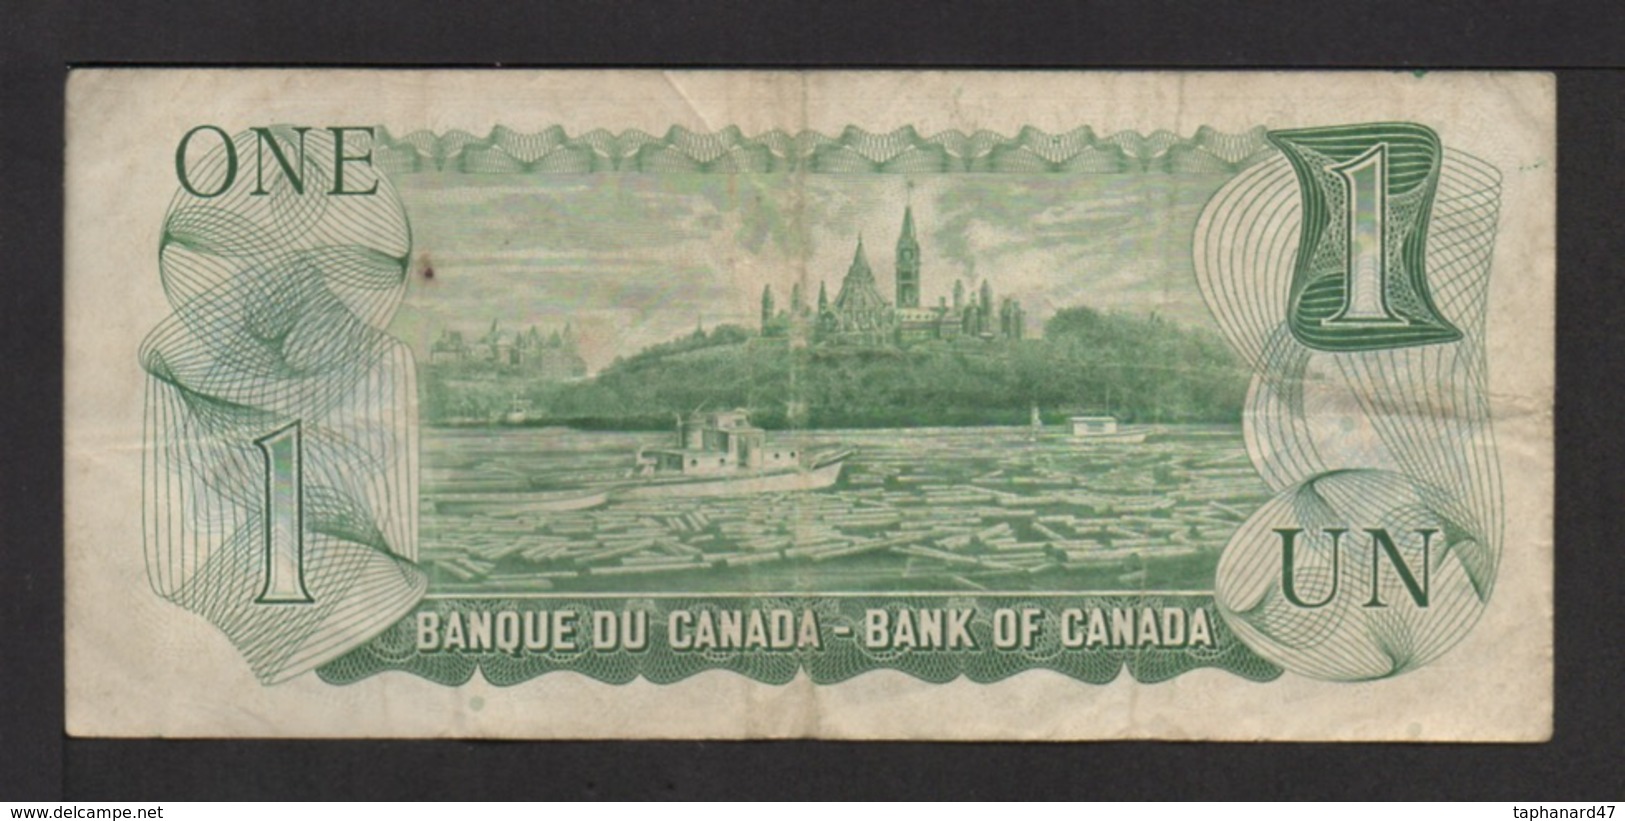 Banque Du Canada . 1 DOLLAR  .1973 . N° NM0019674 . - Canada